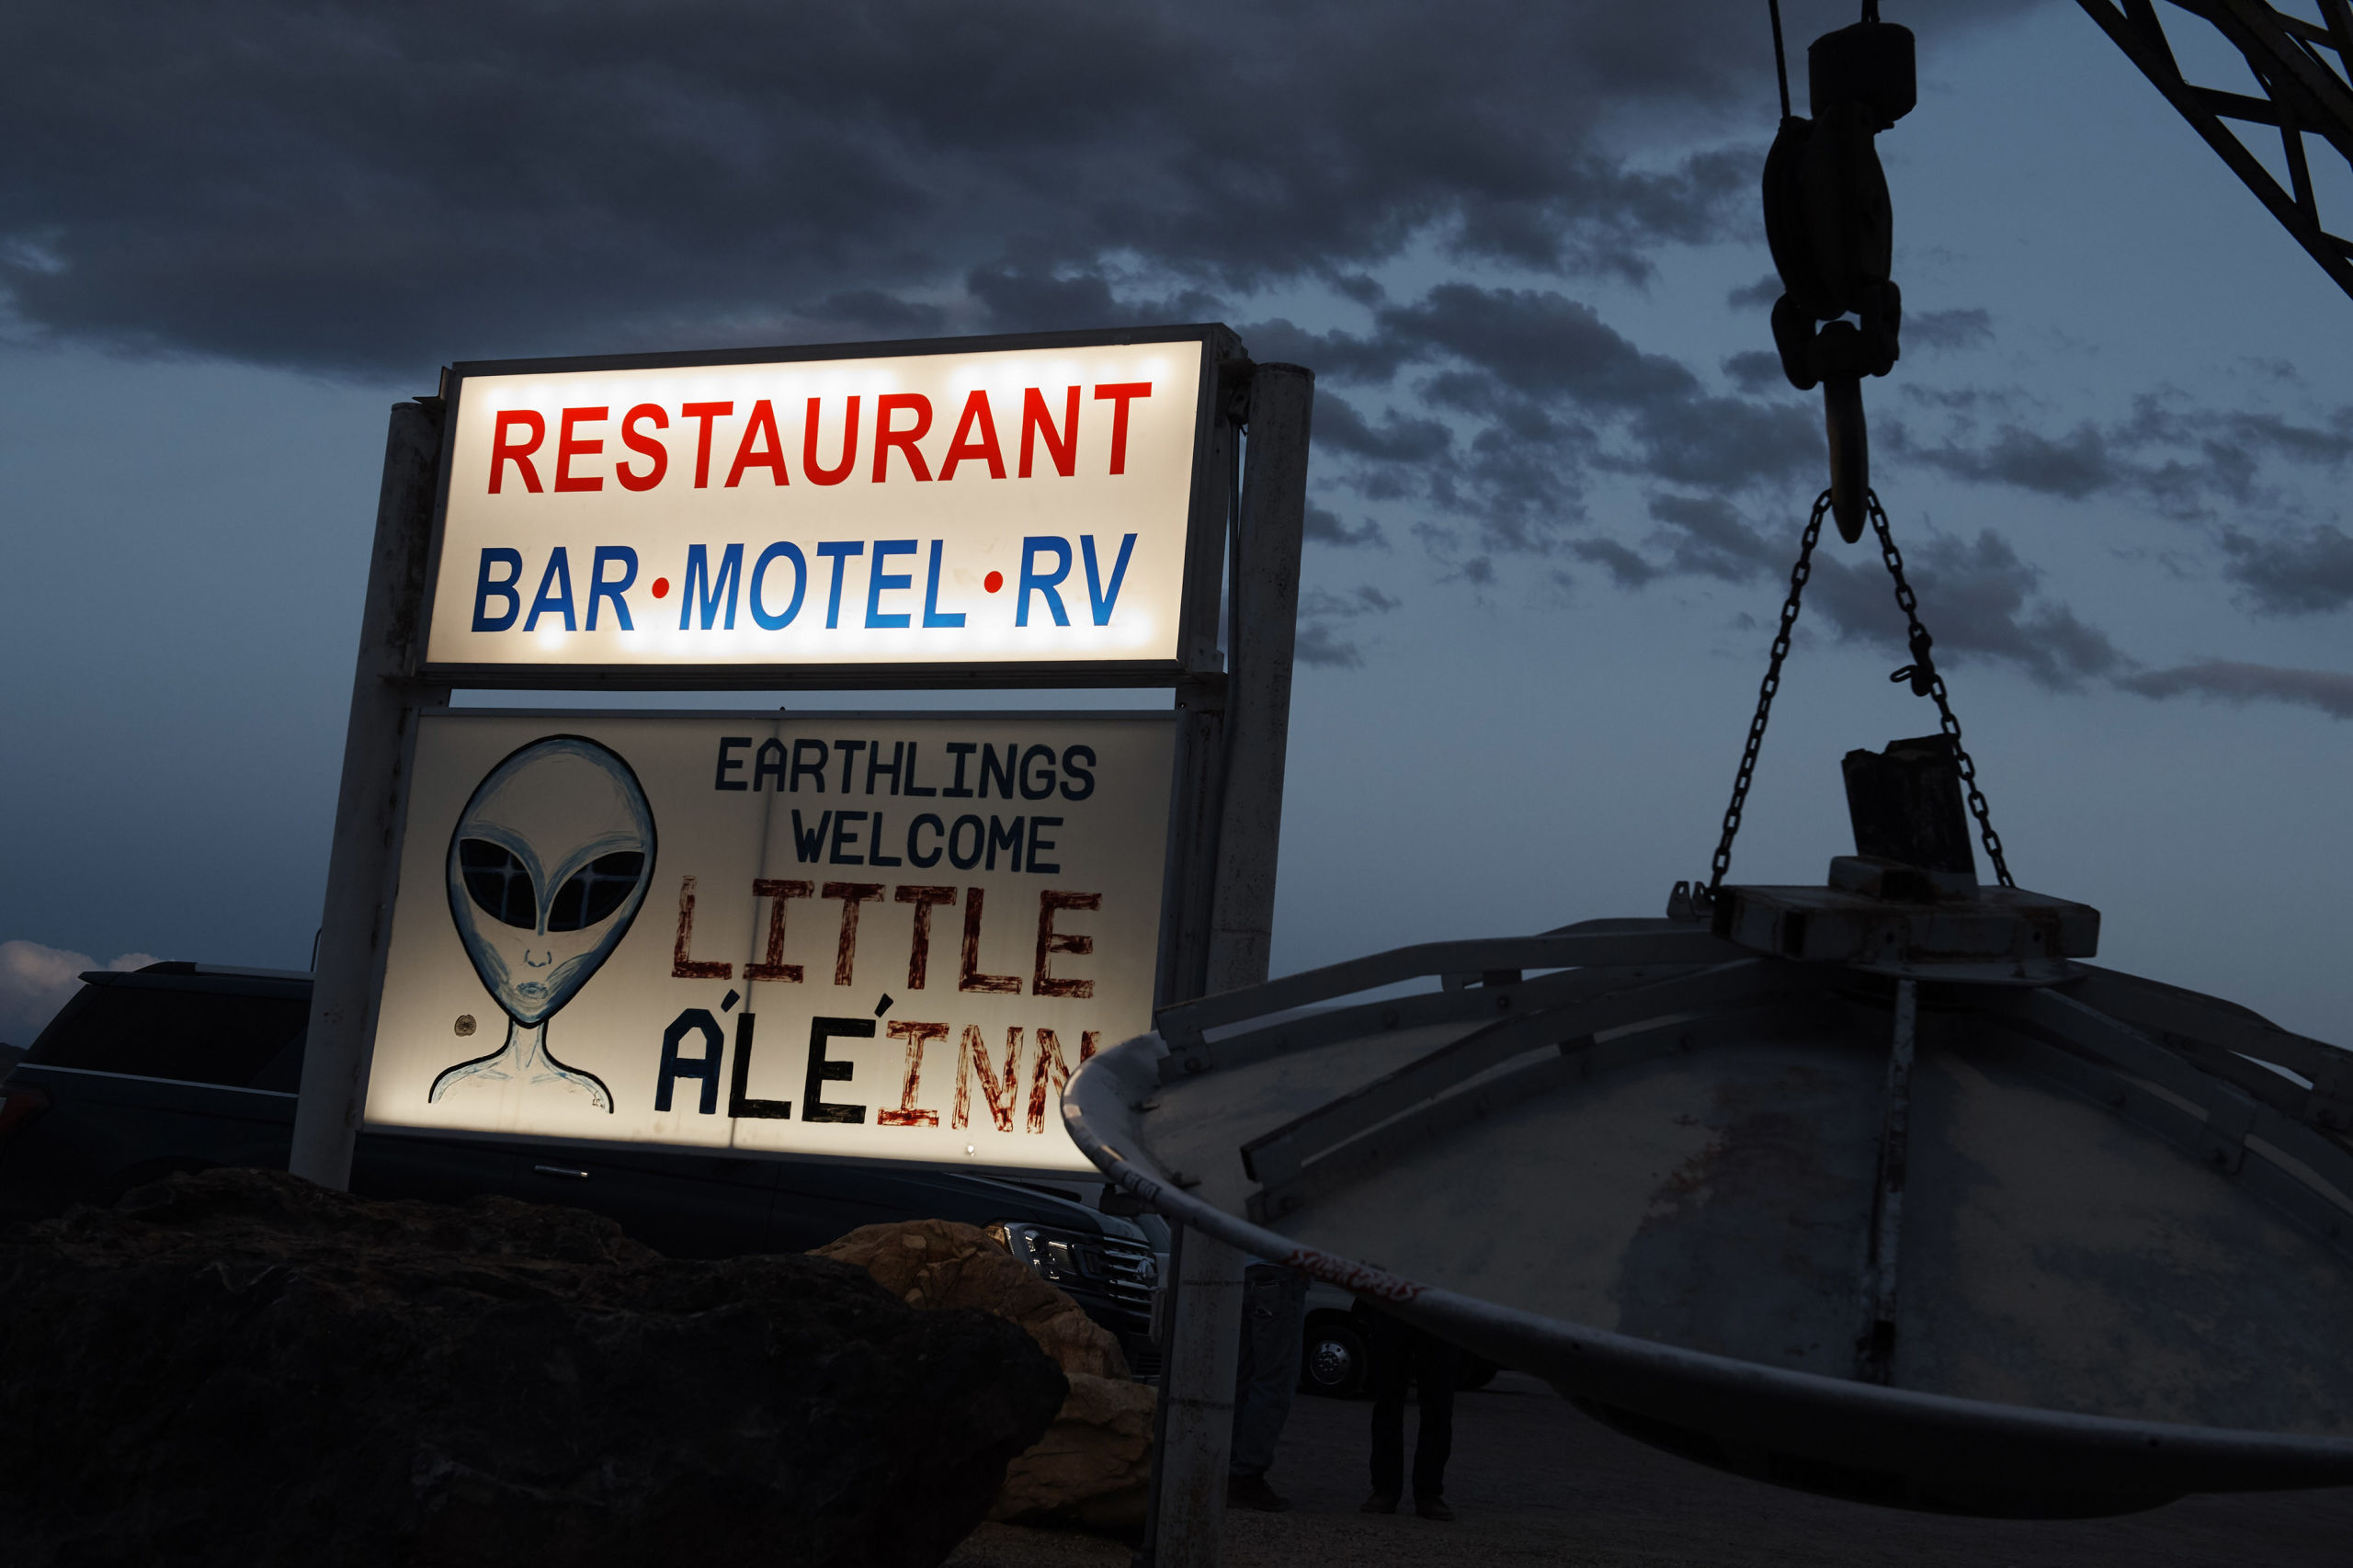 Er vinden verschillende evenementen plaats in de buurt van Area 51, allemaal in het thema van buitenaards leven.